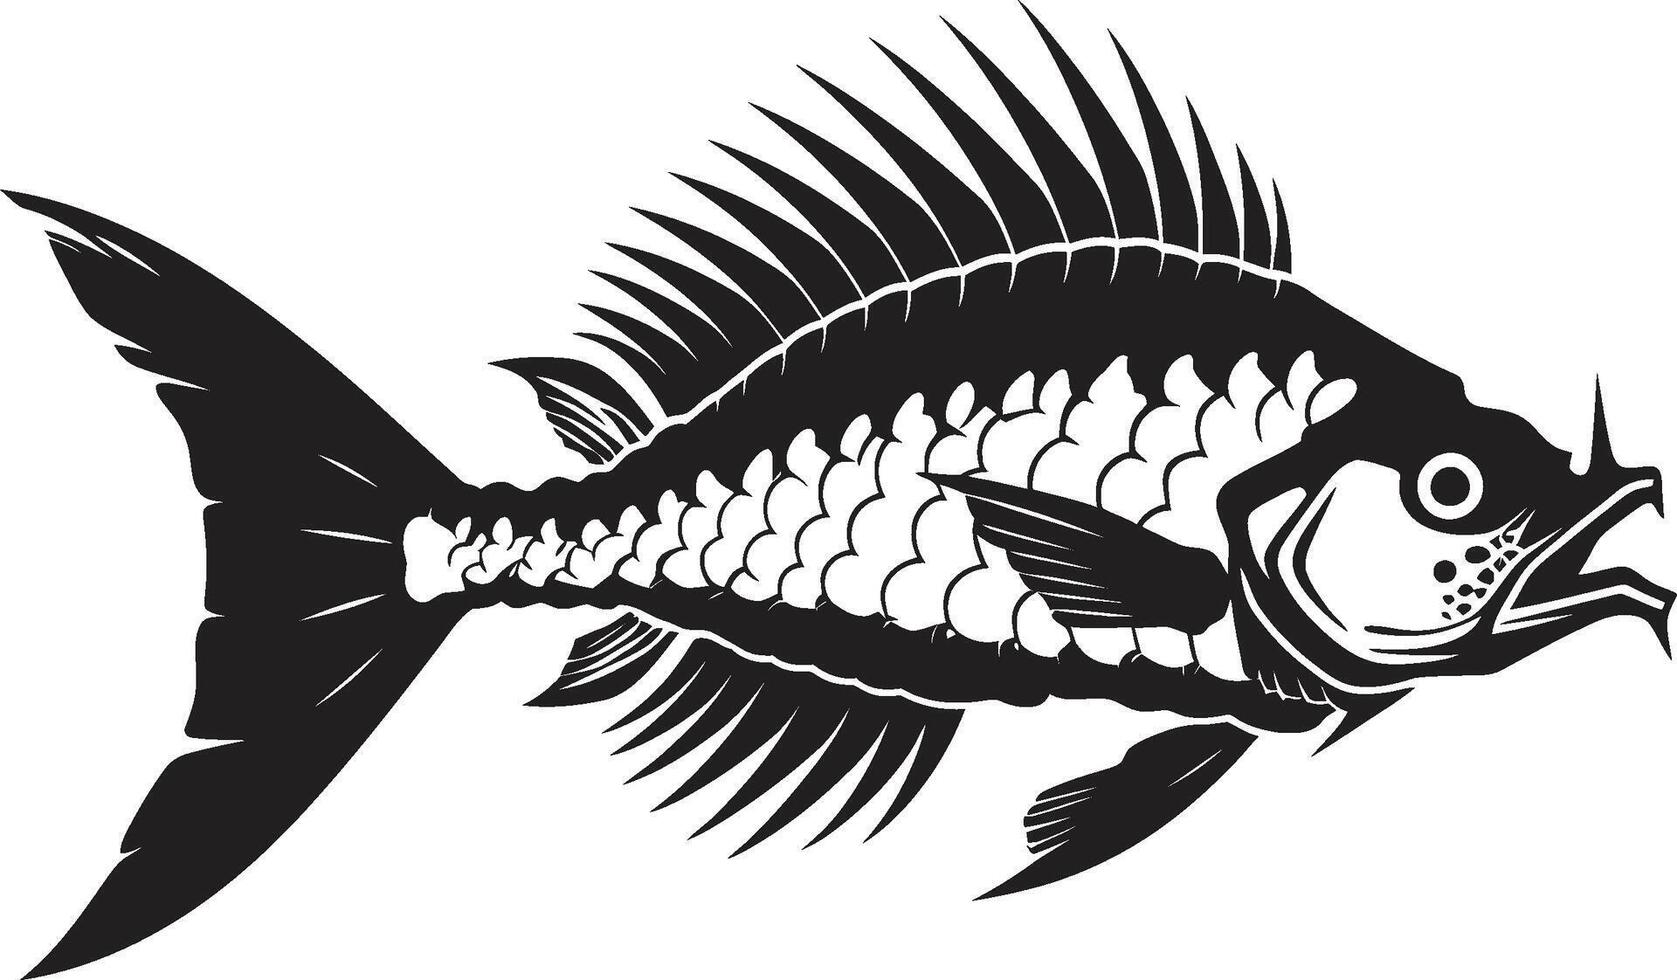 gekarteld spook minimalistisch roofdier vis skelet logo in zwart stealth skelet iconisch zwart roofdier vis skelet ontwerp vector